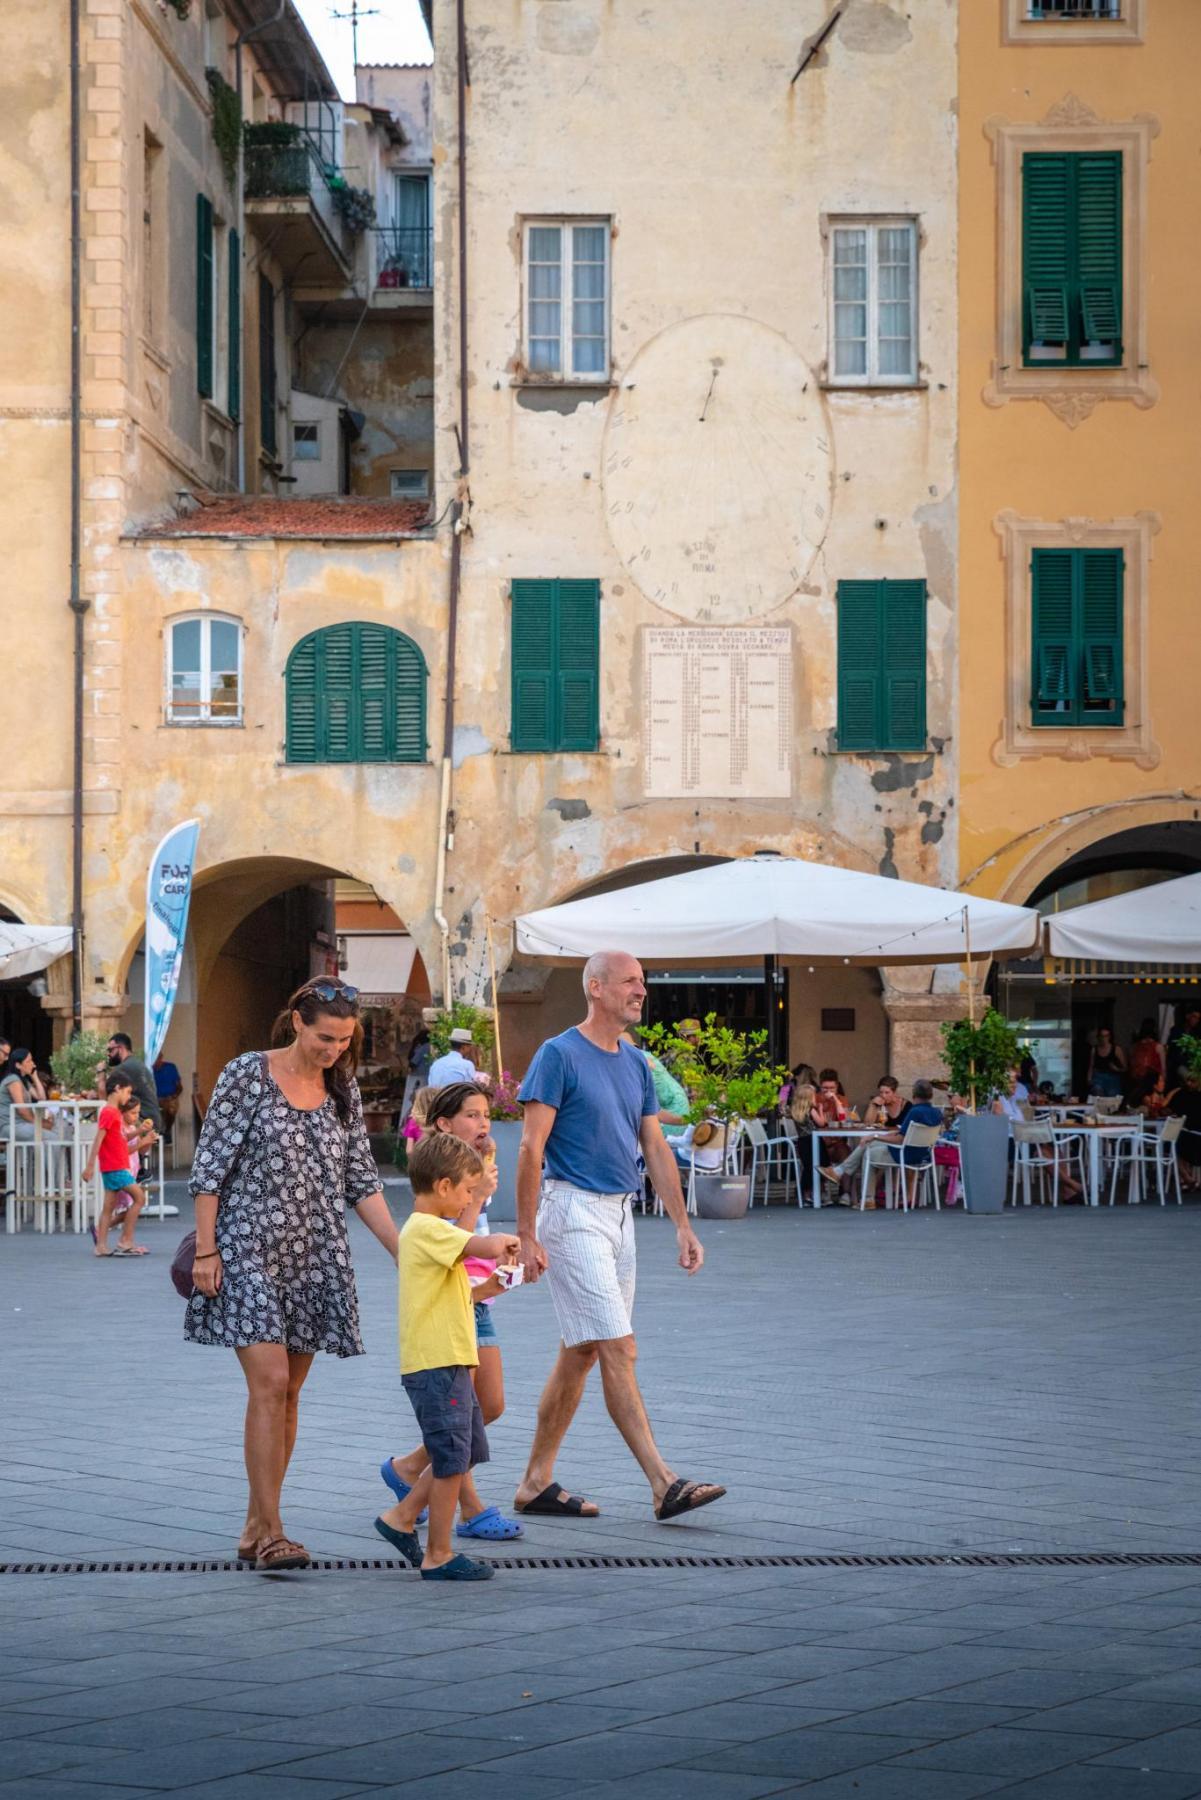 Finale Ligure, Piazza Vittorio Emanuele II, passeggiata in famiglia